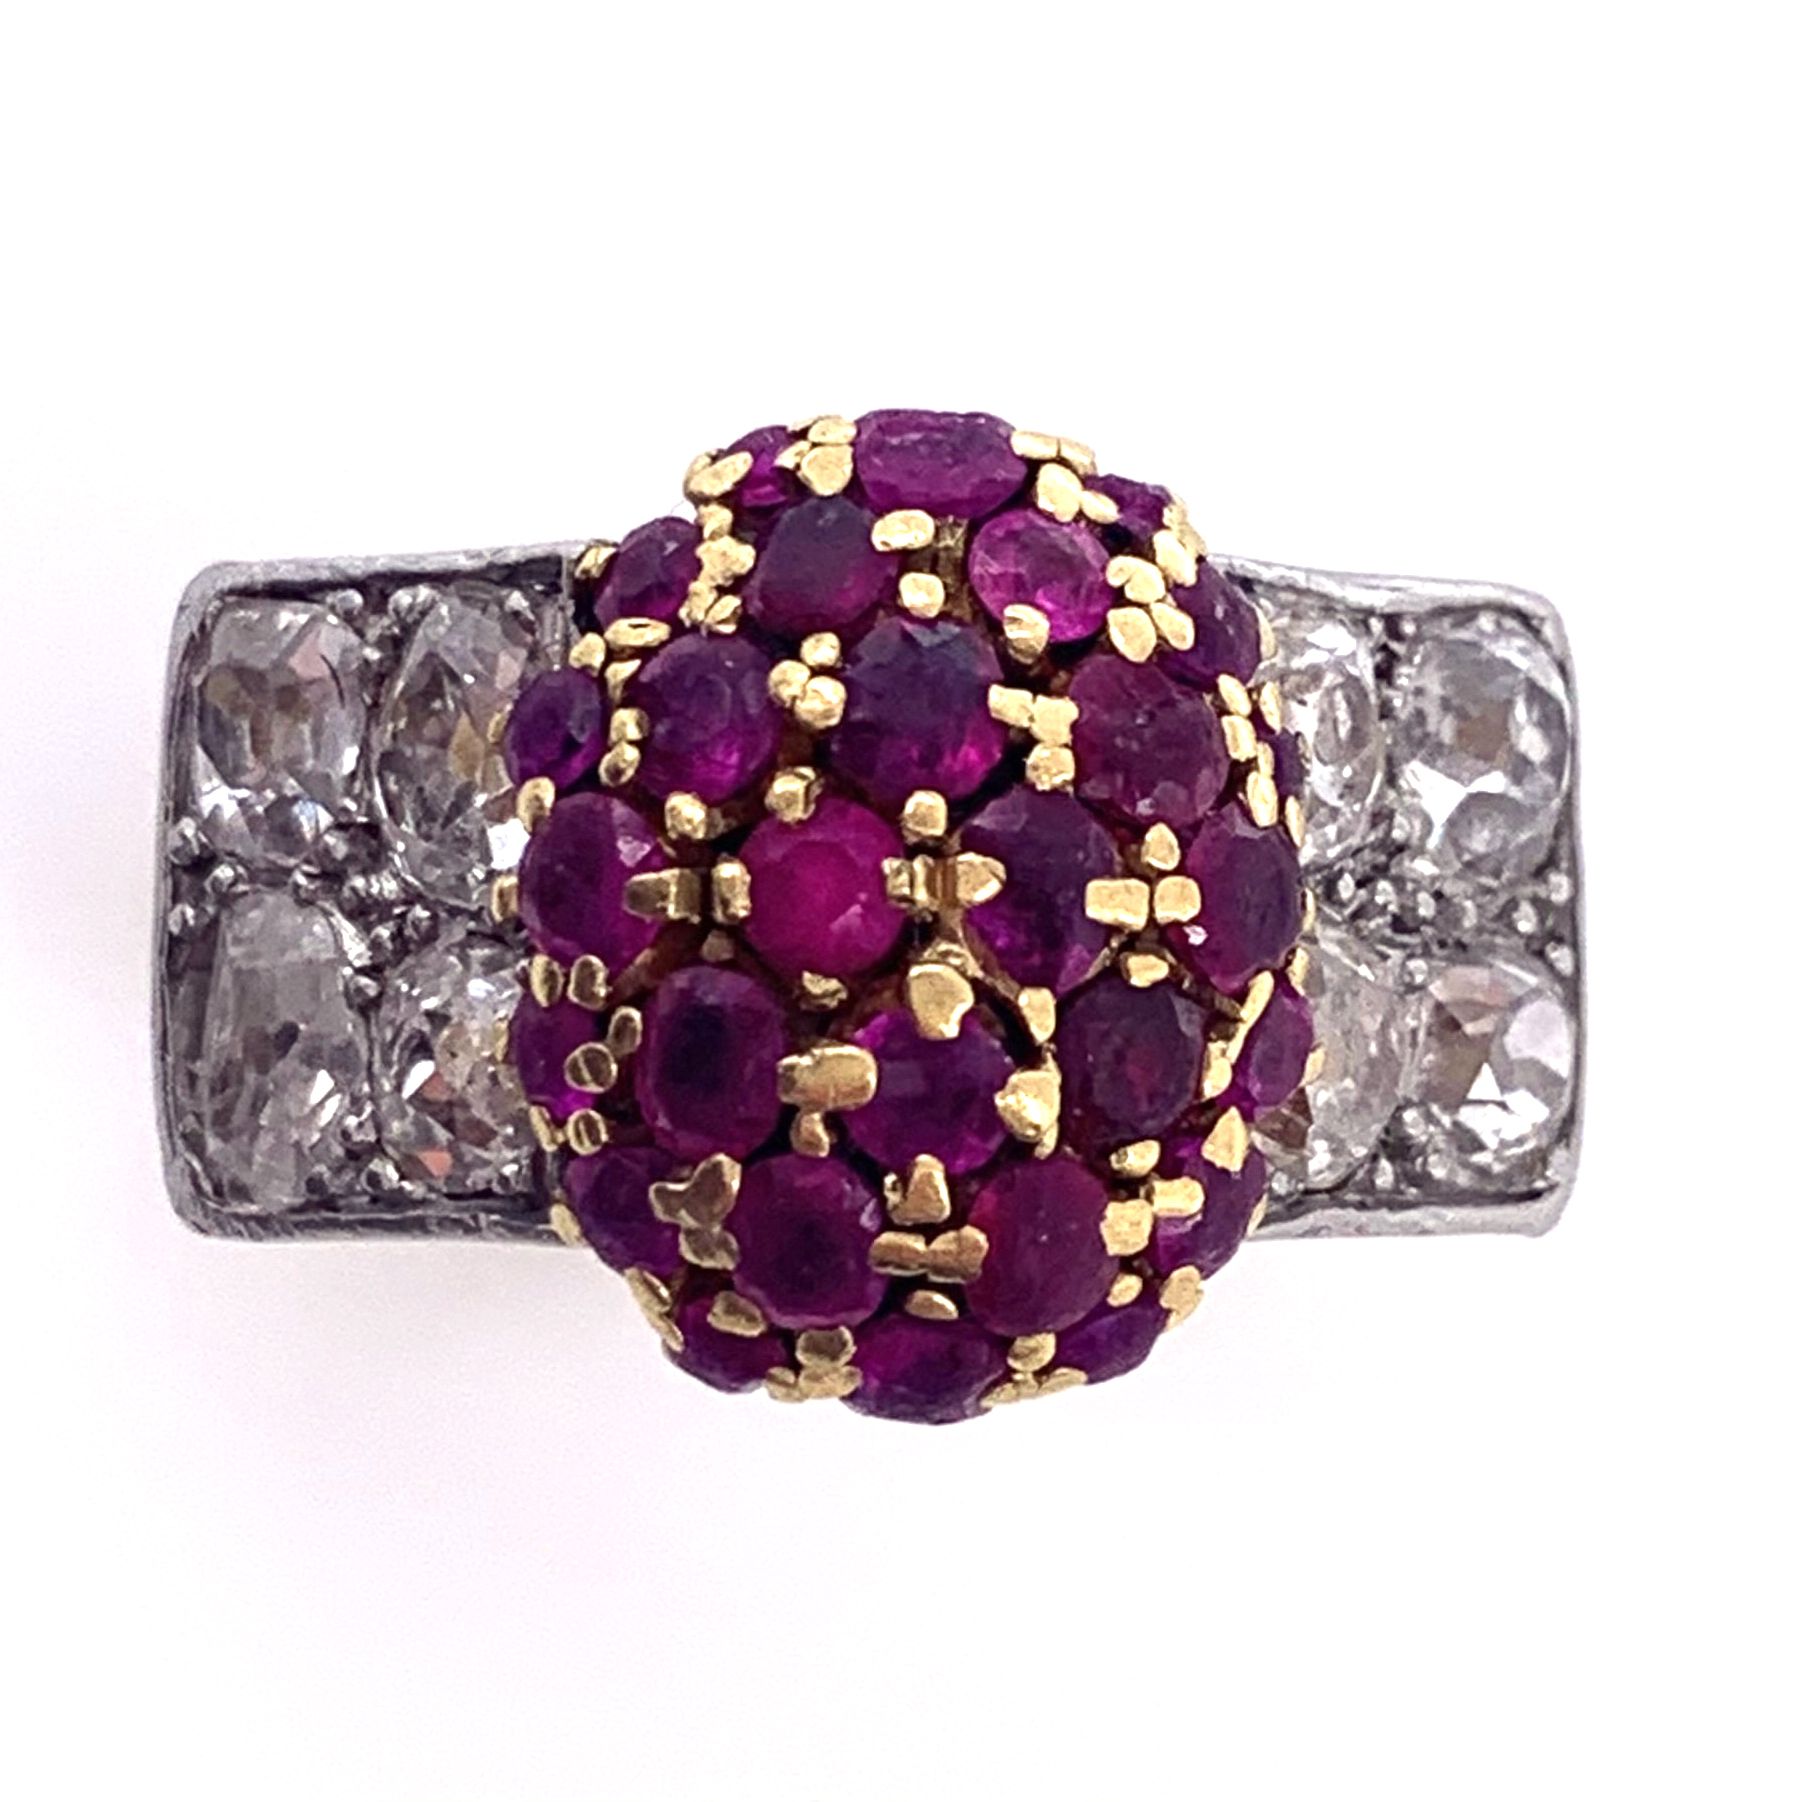 Null 戒指由一个椭圆形的铺路红宝石中心和八个老式切割钻石组成。镶嵌在18K黄金和铂金中。 毛重：19.15克。 一枚钻石、红宝石、铂金和黄金戒指。